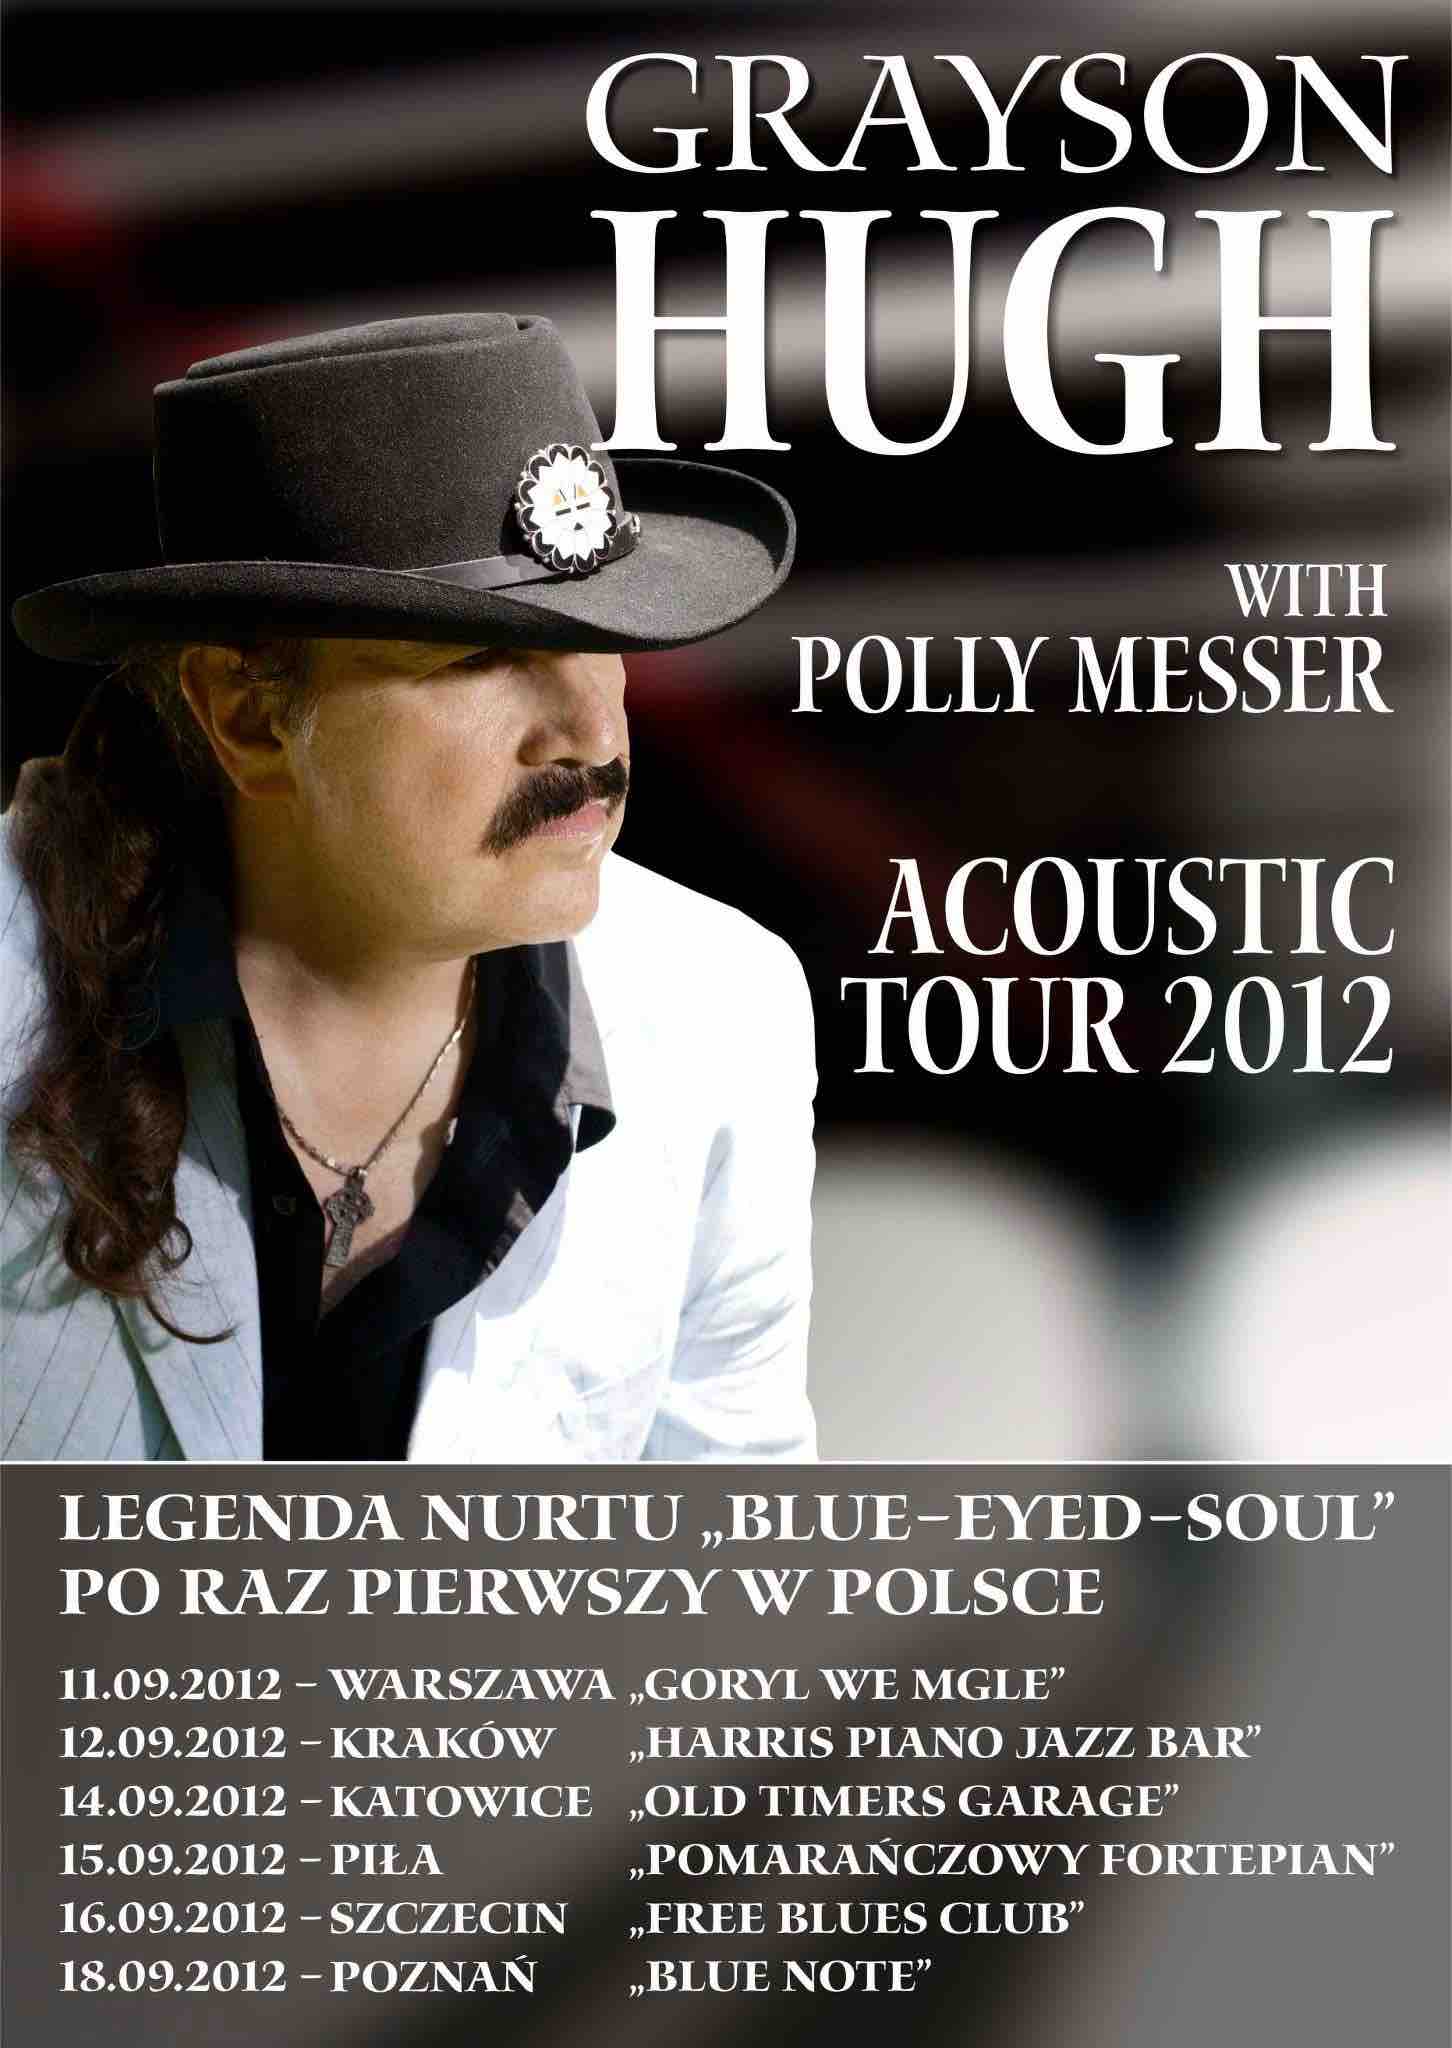 ACOUSTIC TOUR 2012 POSTER copy